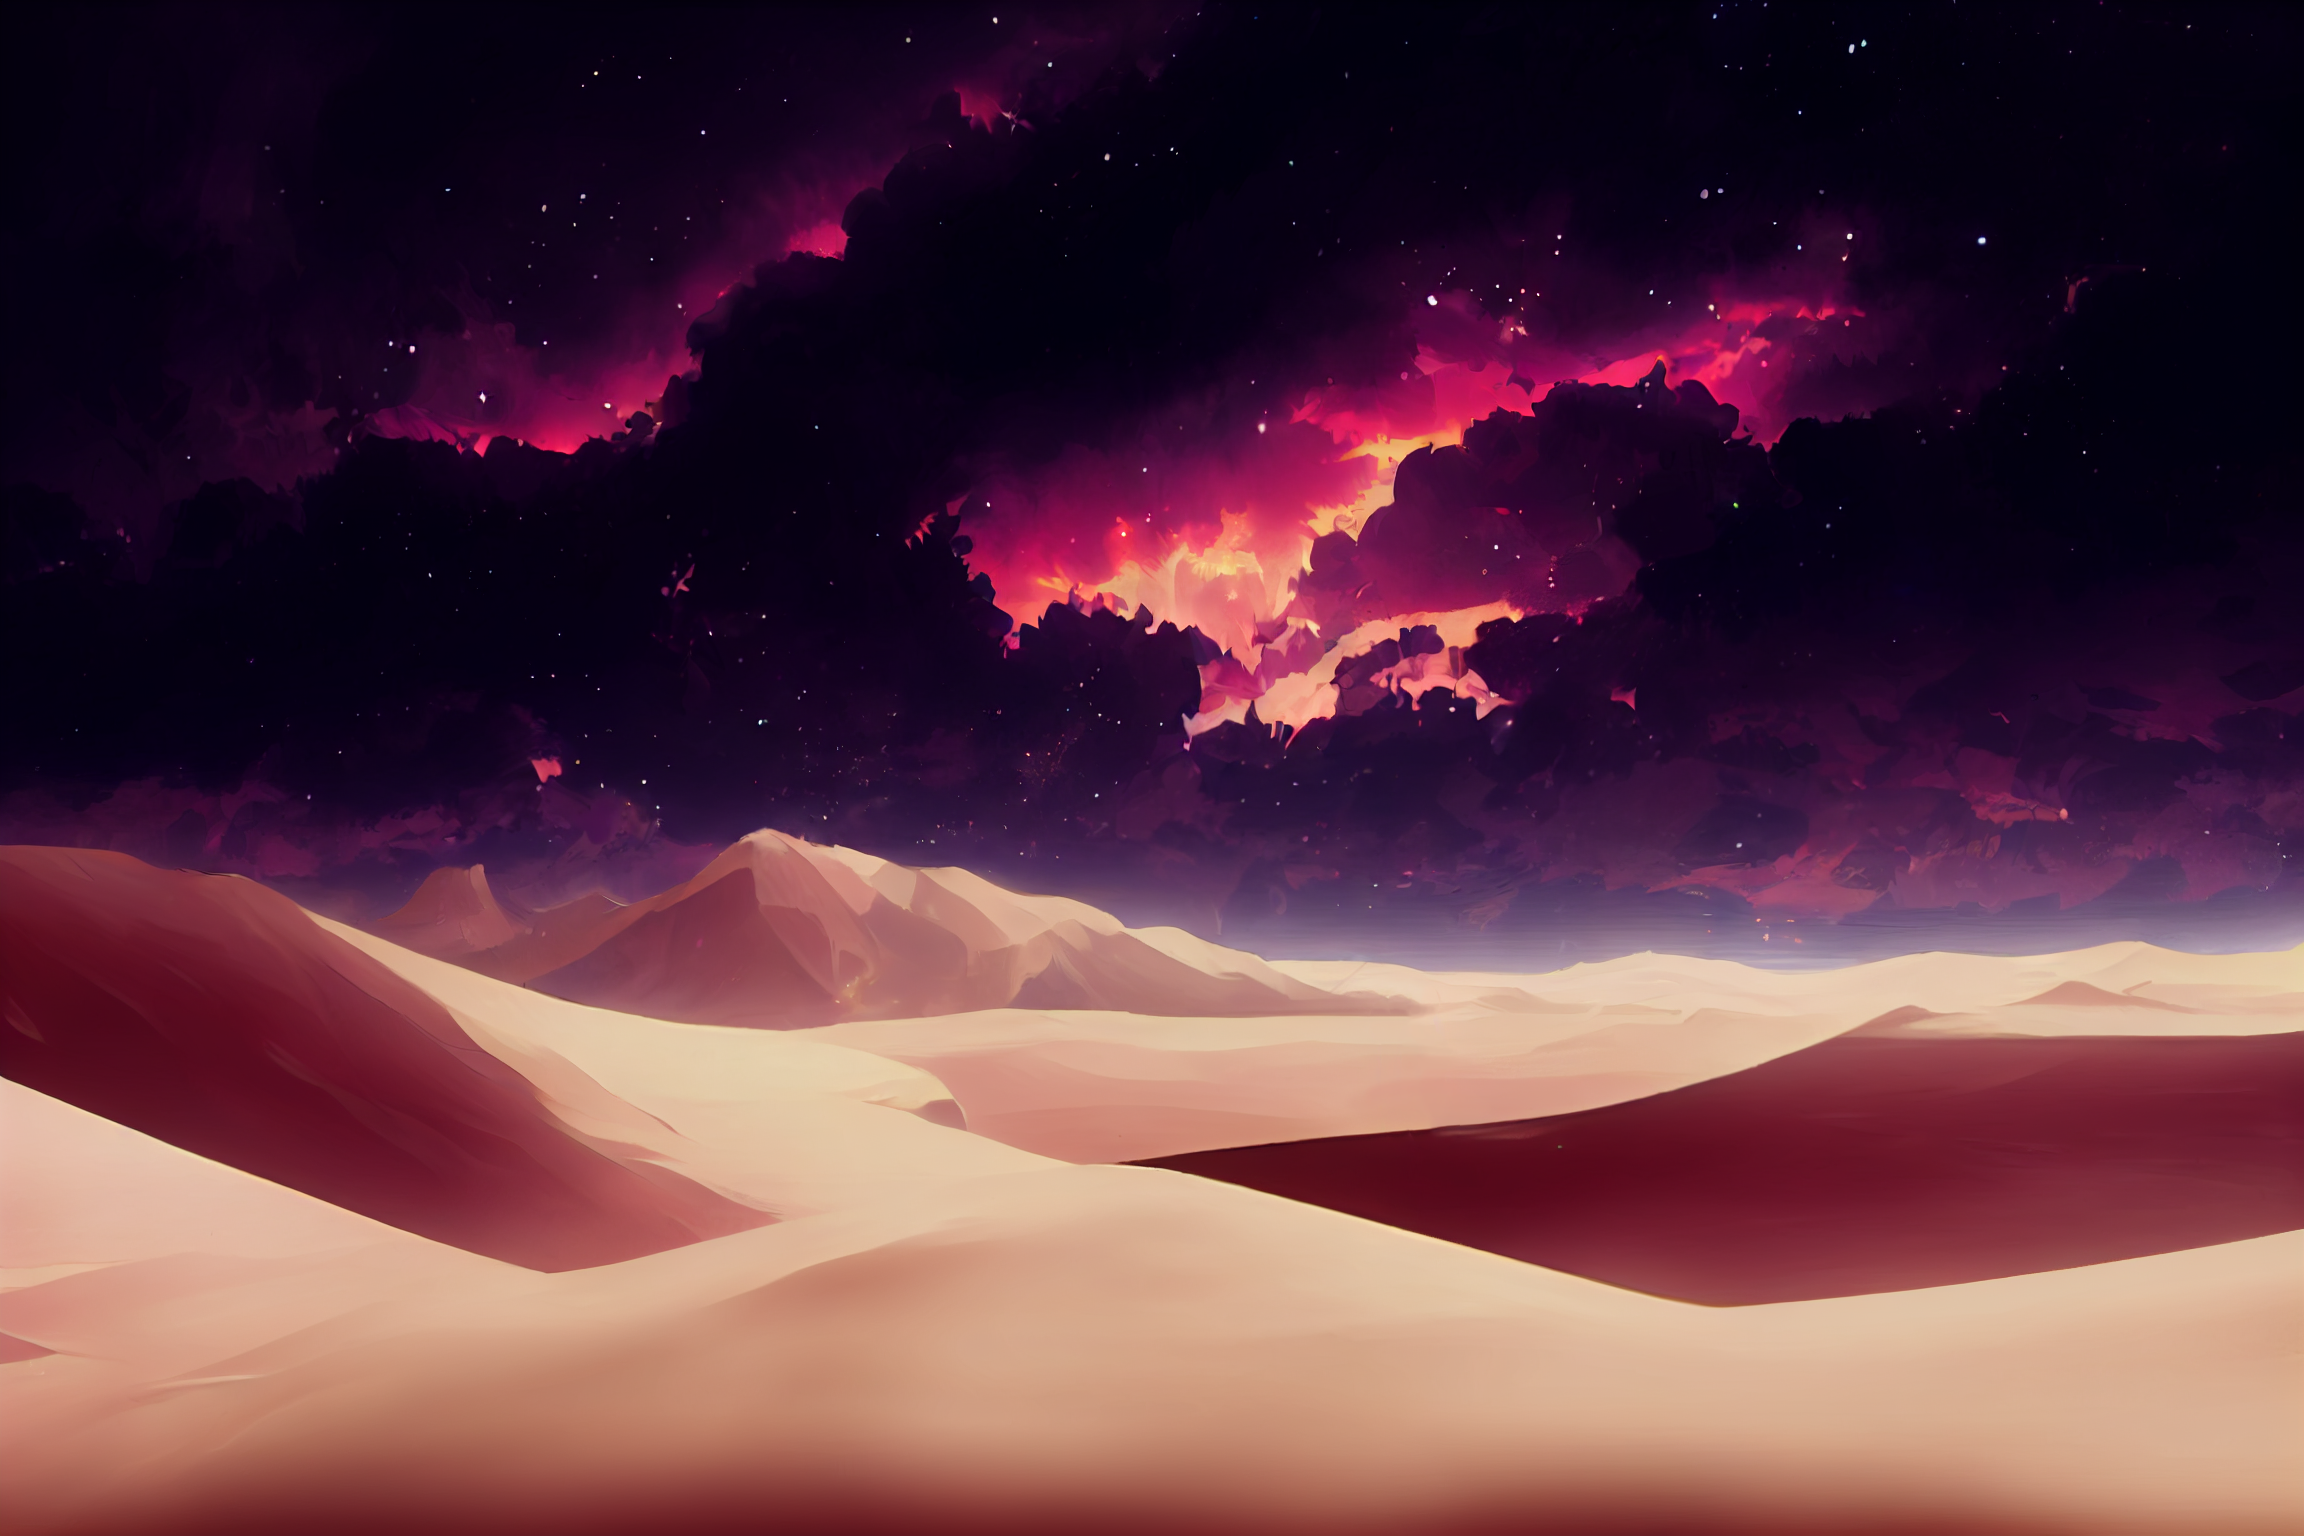 夕方の砂漠の背景イラスト02,Illustration of Sunset Desert02